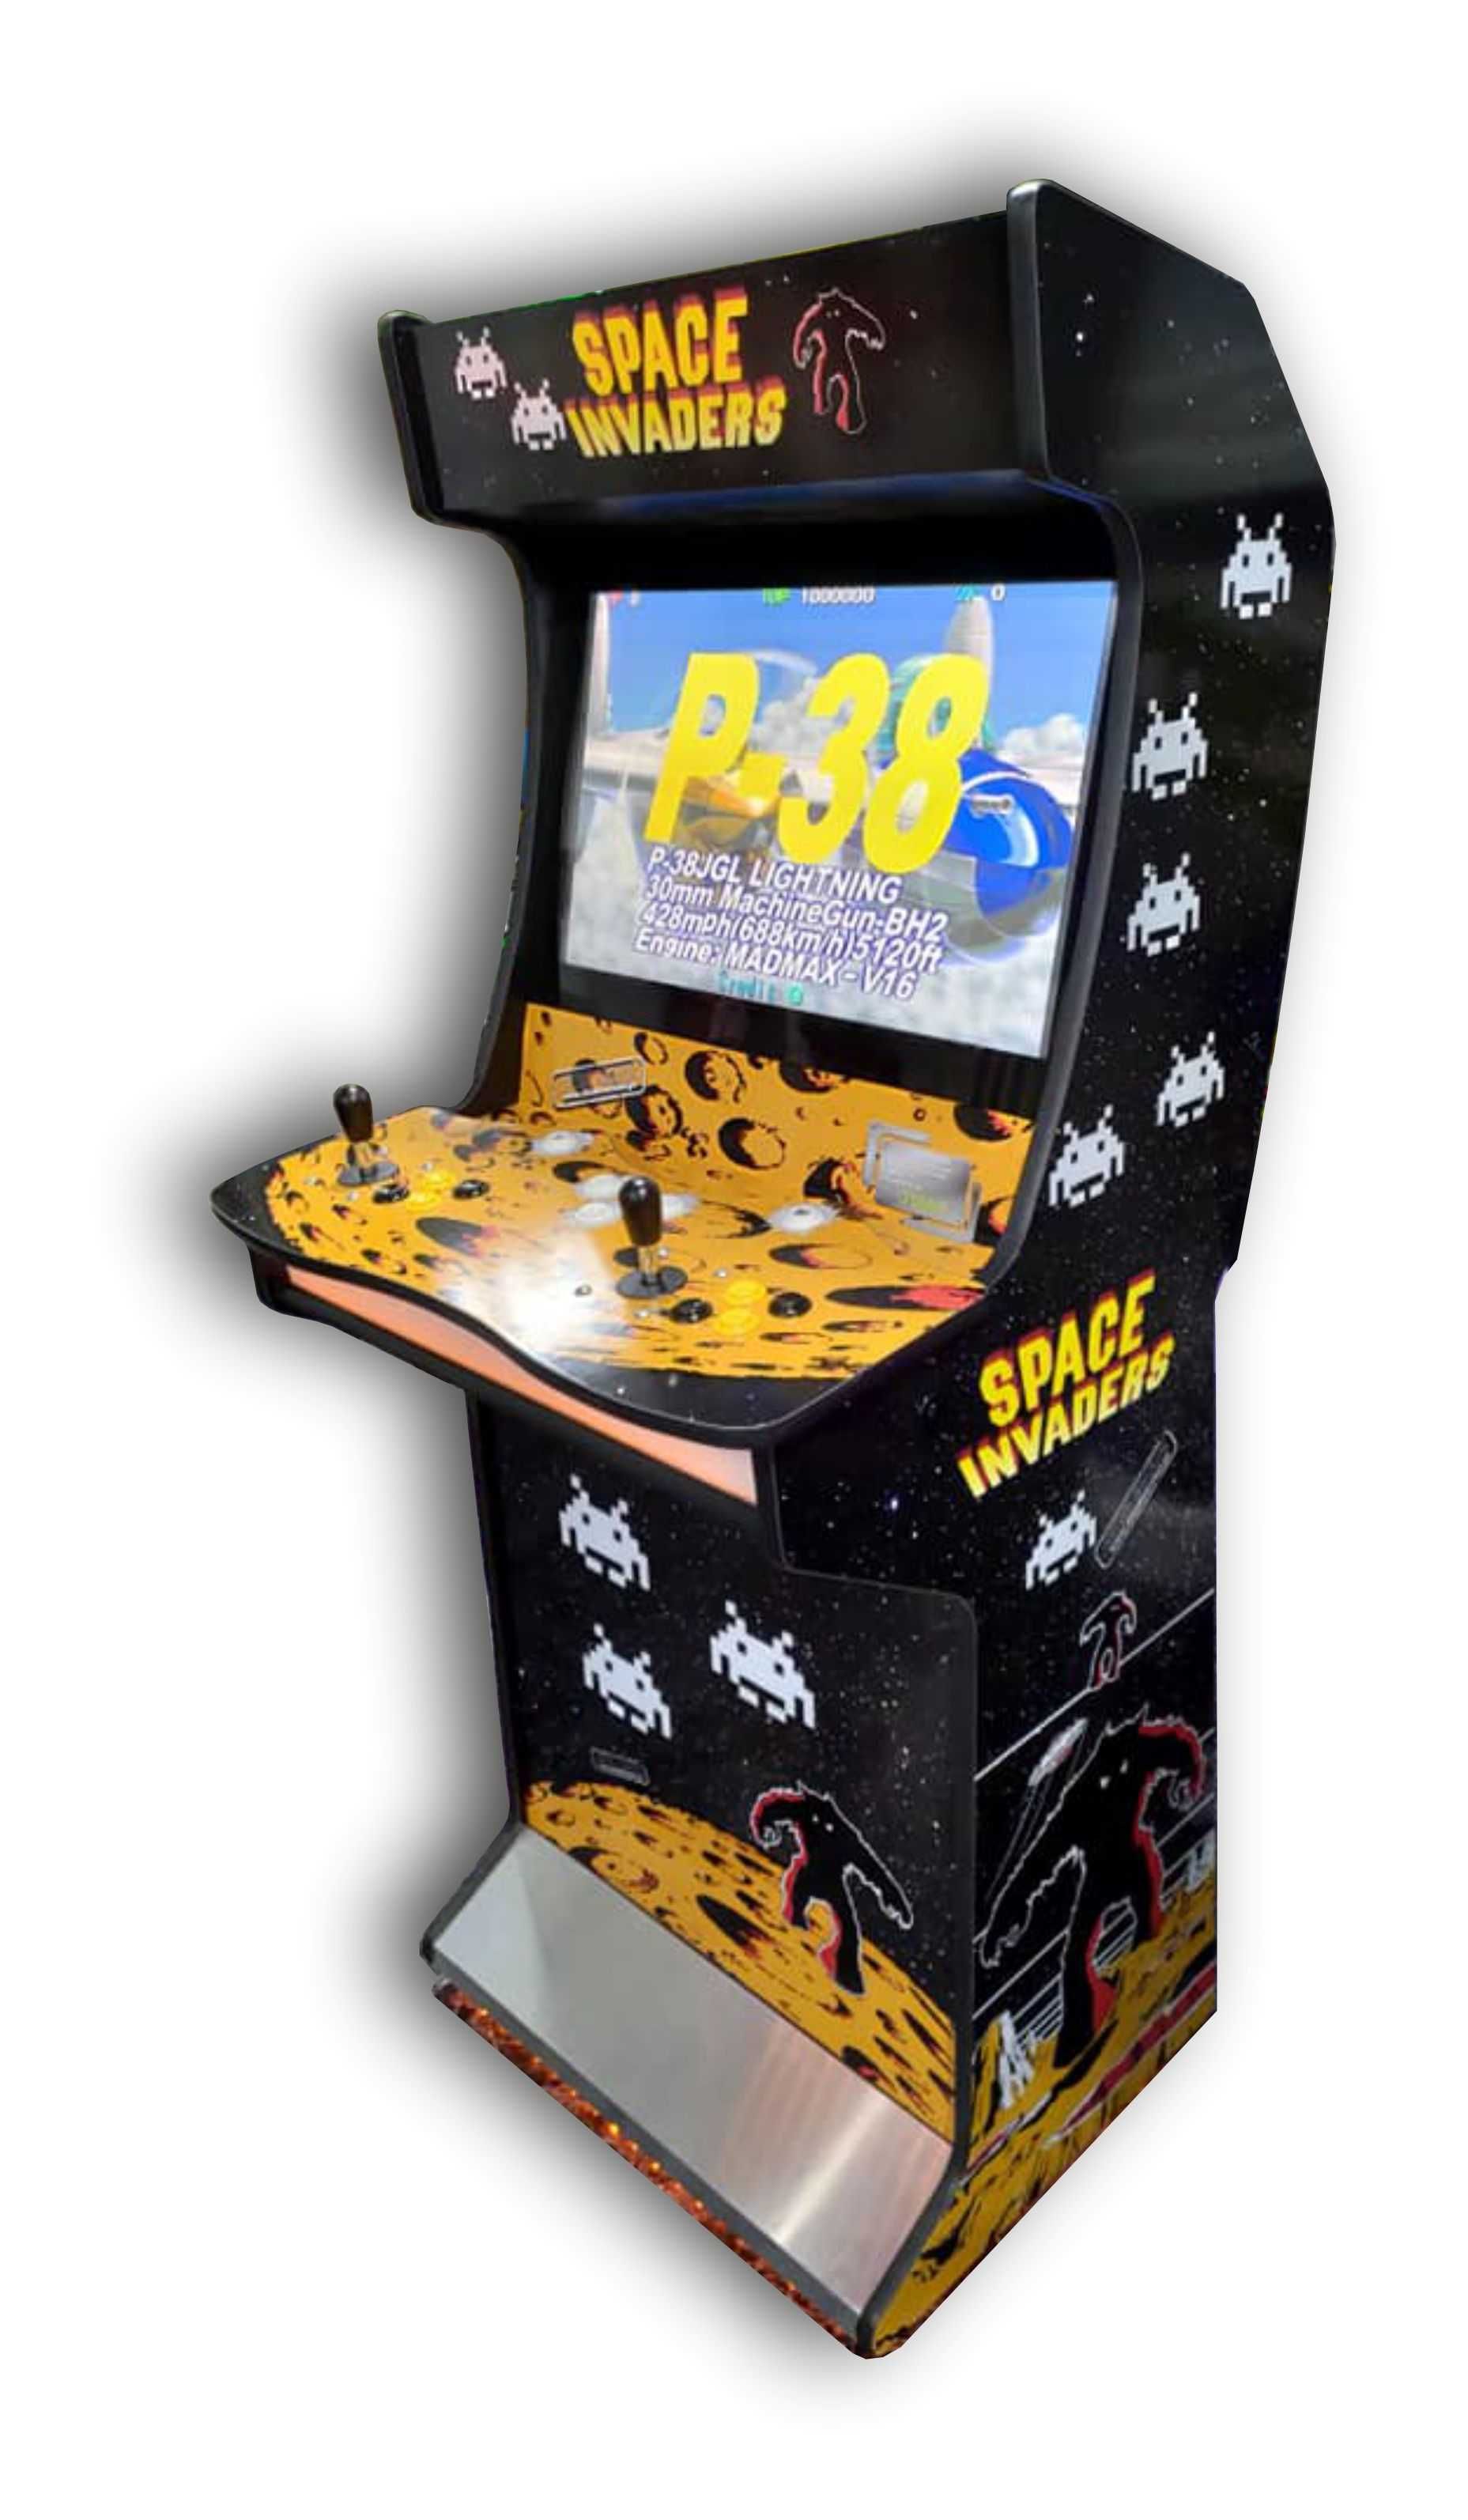 Retro Arcade - Novas (Somos os fabricantes)